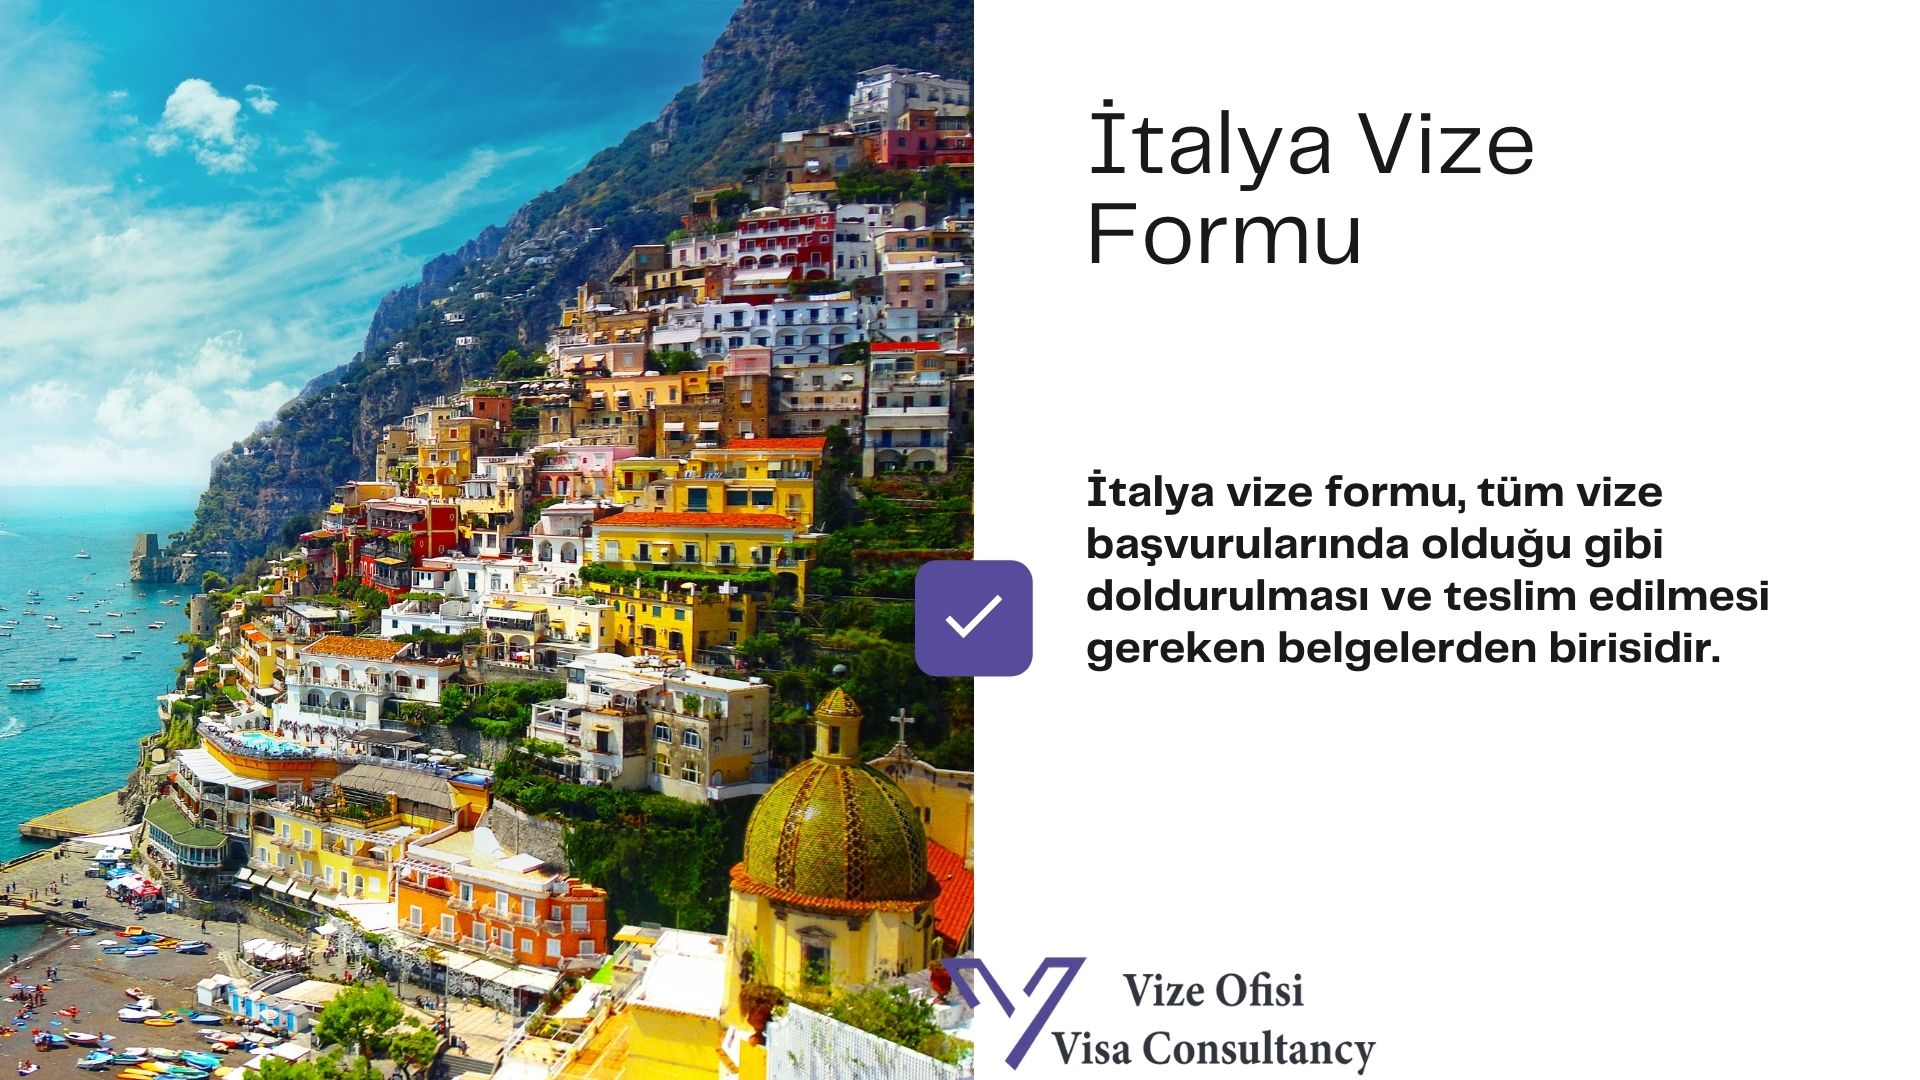 İtalya Vize Form ve Dilekçe 2021